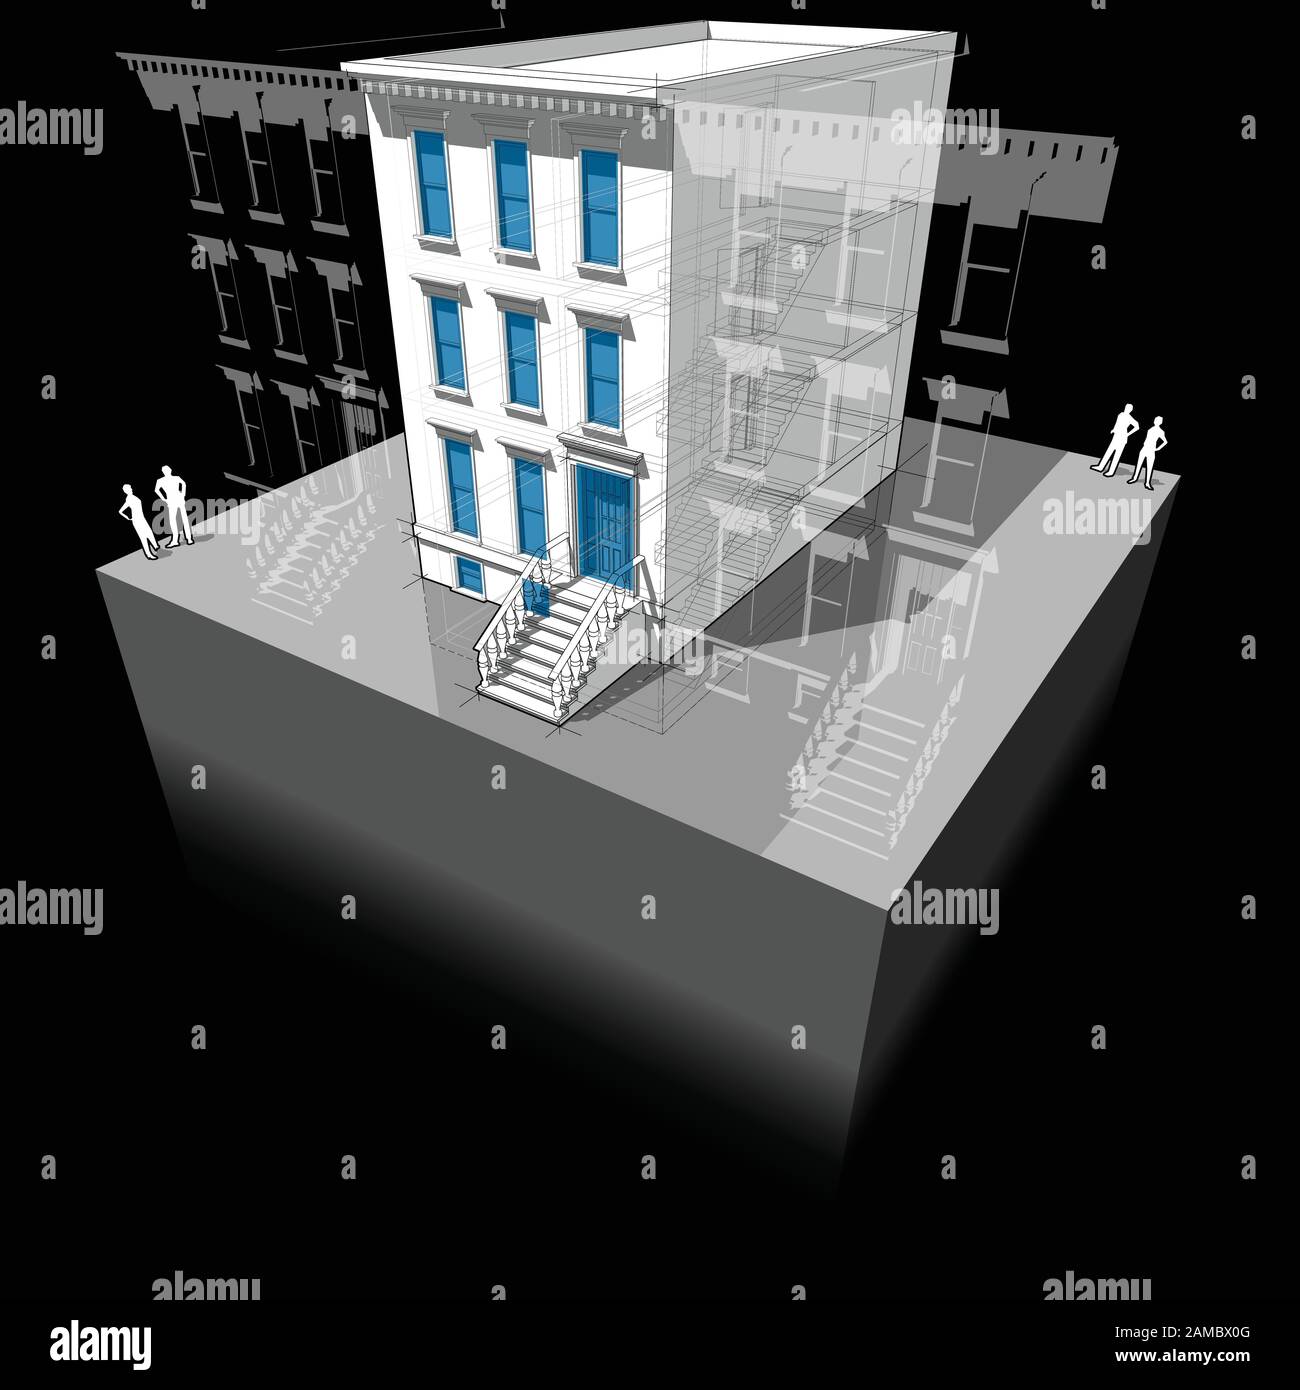 Diagramm eines typischen amerikanischen Stadthauses mit neuen Fenstern und Türen zur Verbesserung der Energieeffizienz des Gebäudes Stock Vektor